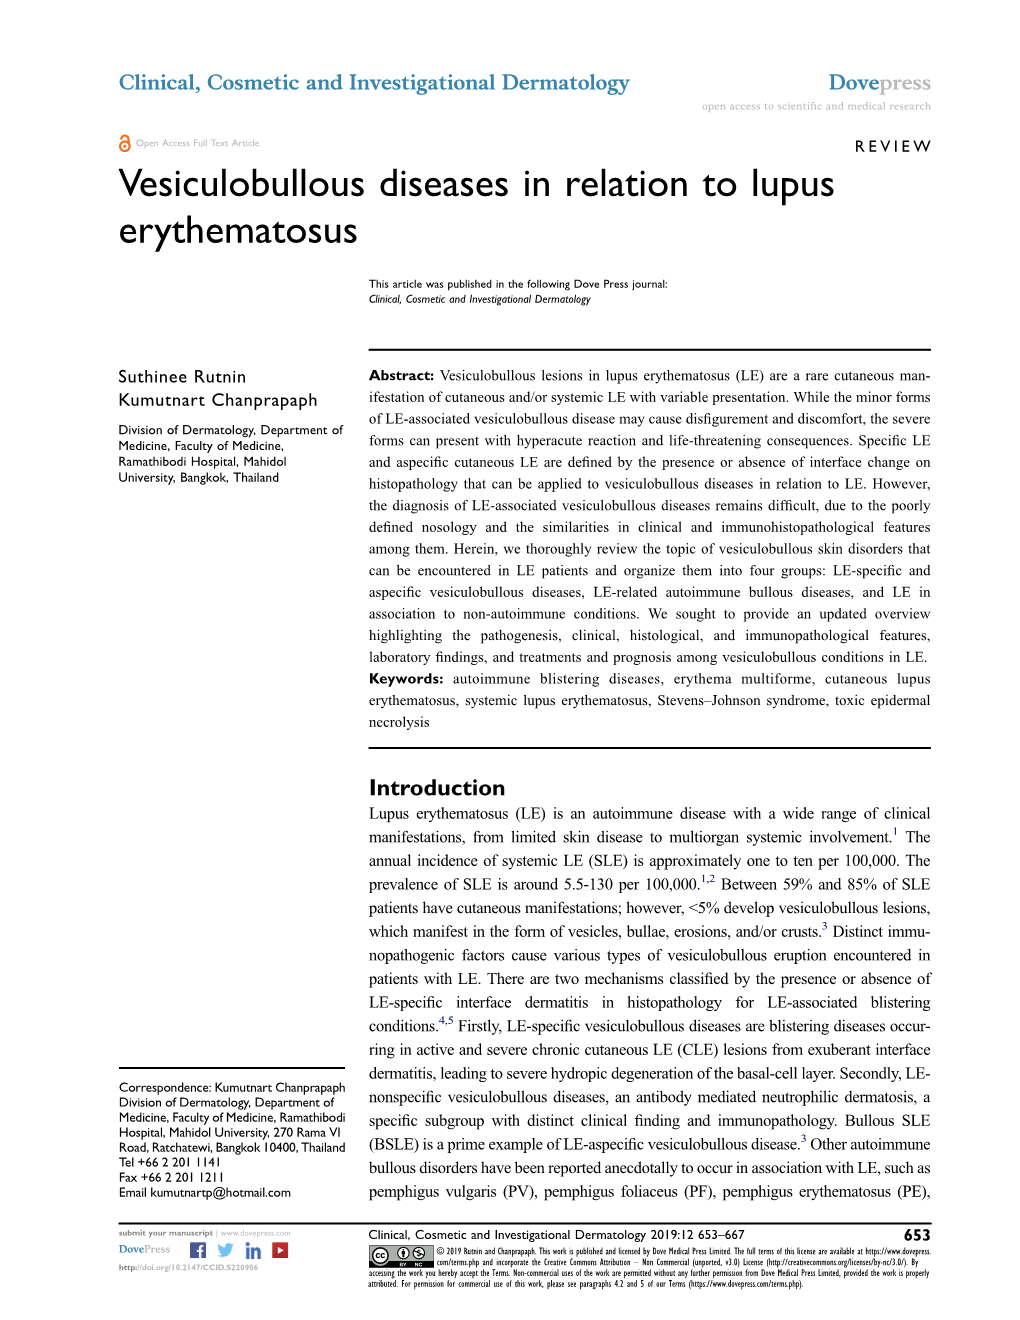 Vesiculobullous Diseases in Relation to Lupus Erythematosus